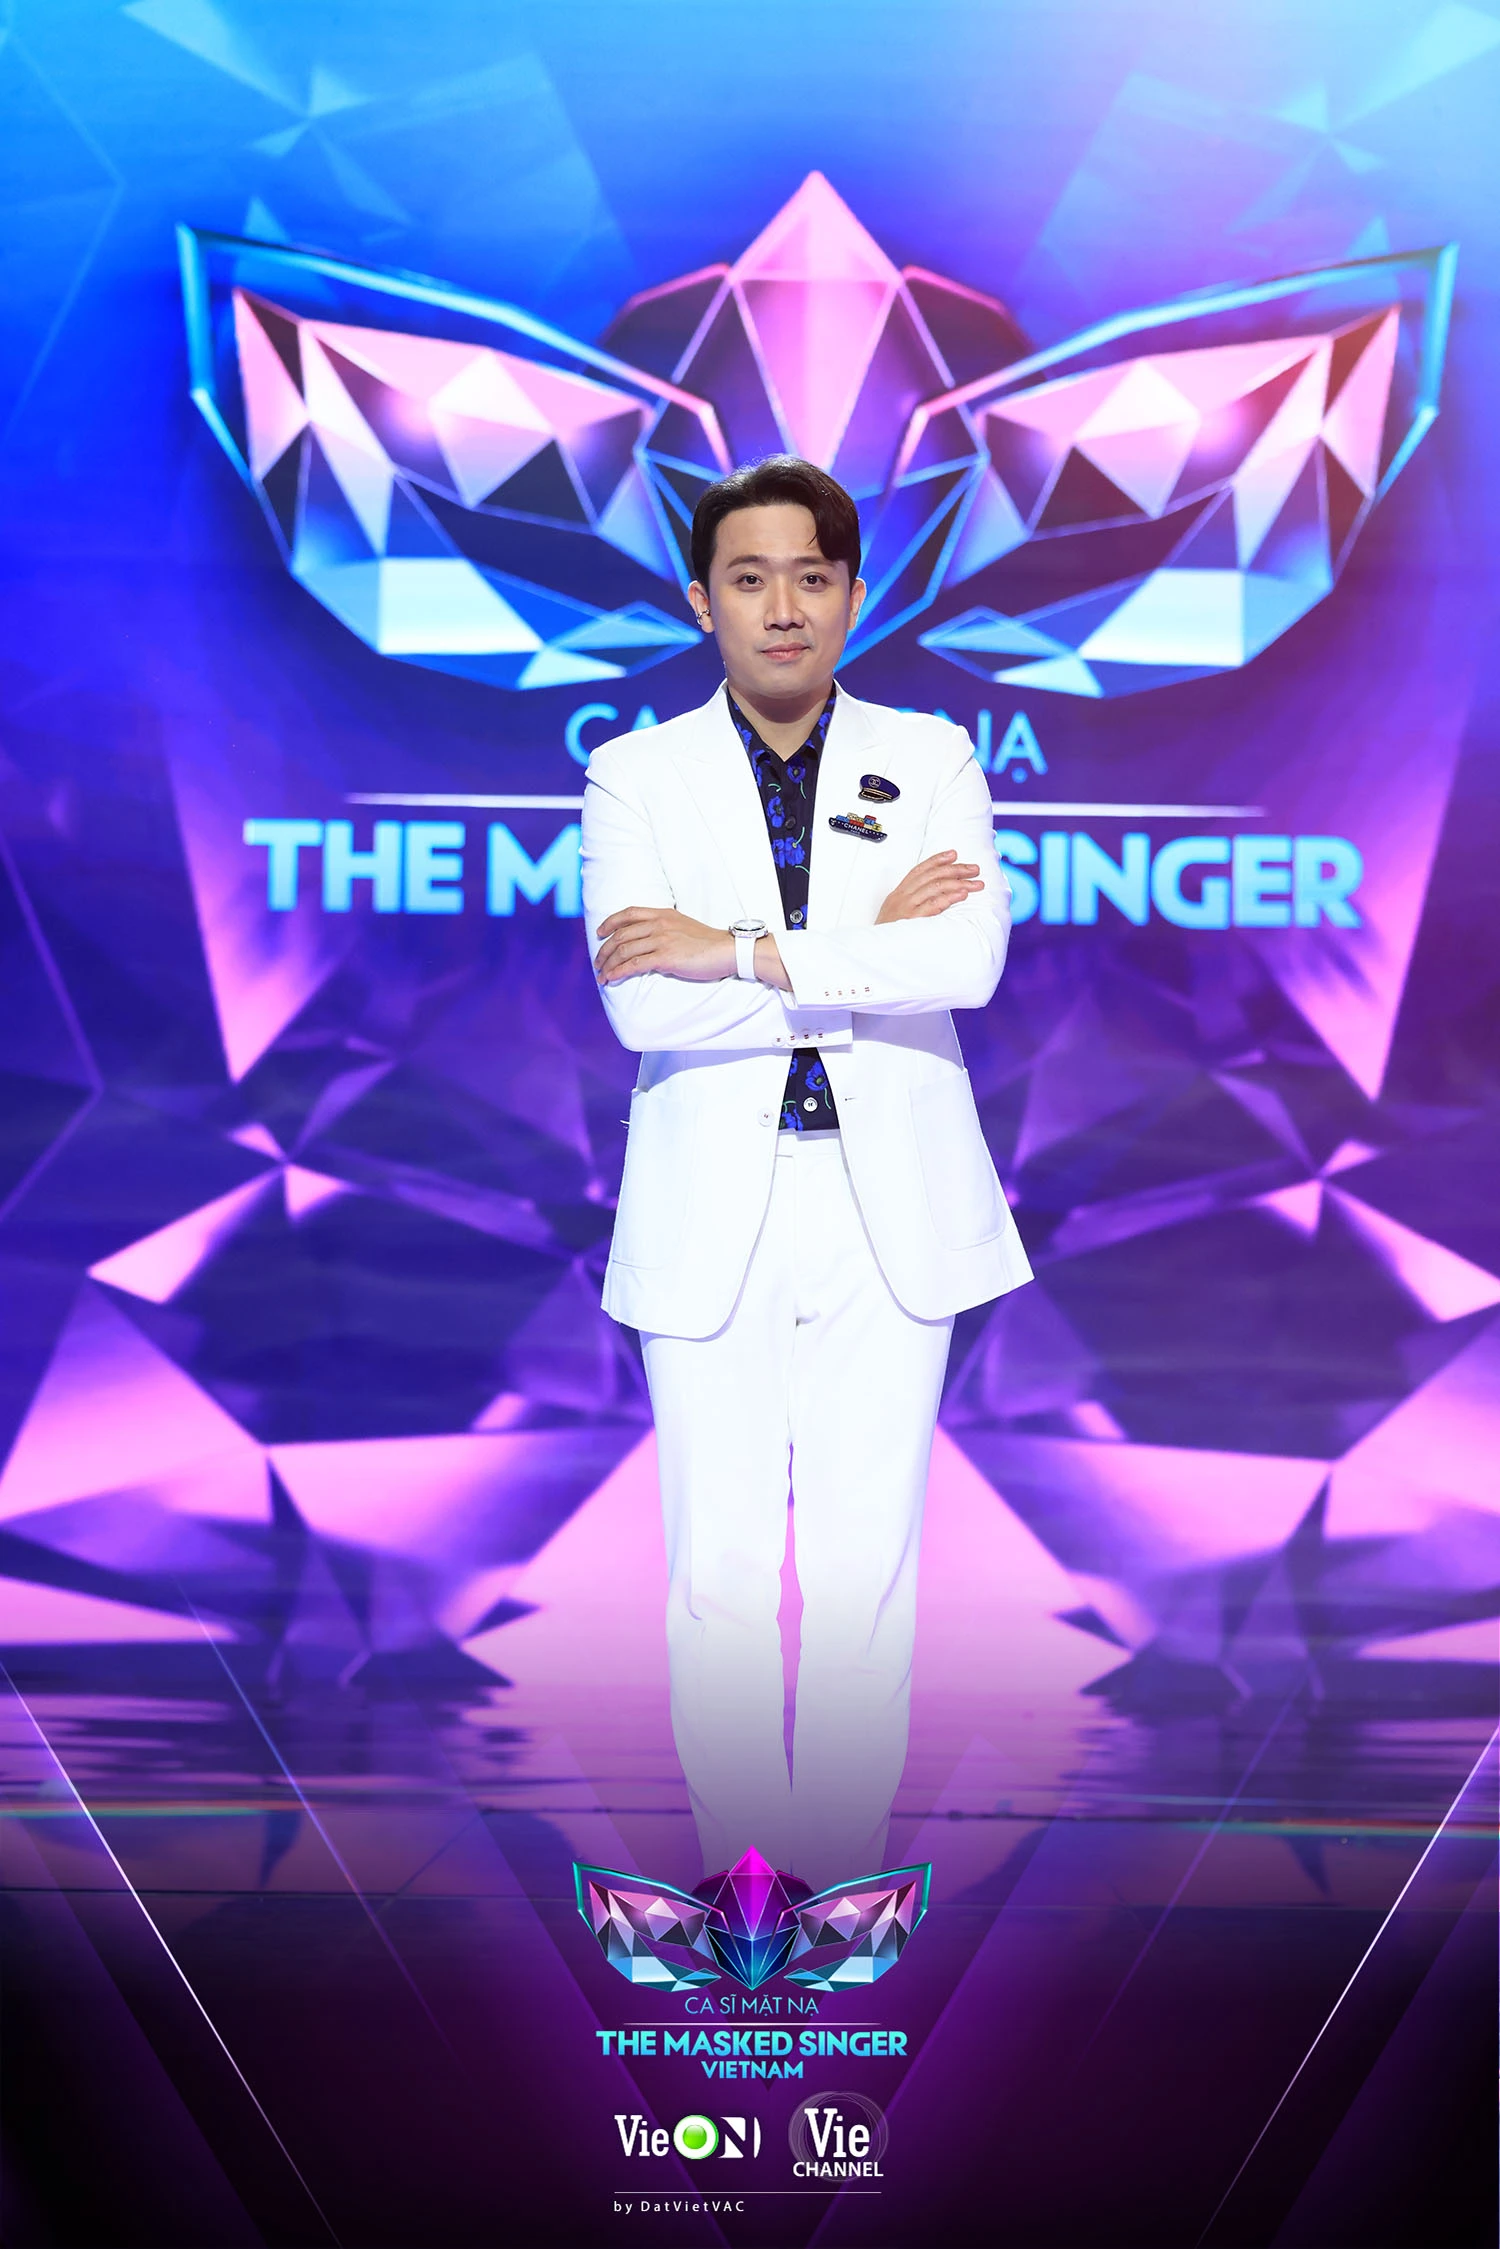 Không phải là MC, Trấn Thành bất ngờ “debut” vai trò cố vấn cho một chương trình tranh tài âm nhạc giữa các ca sĩ hàng đầu Việt Nam  - Ảnh 4.